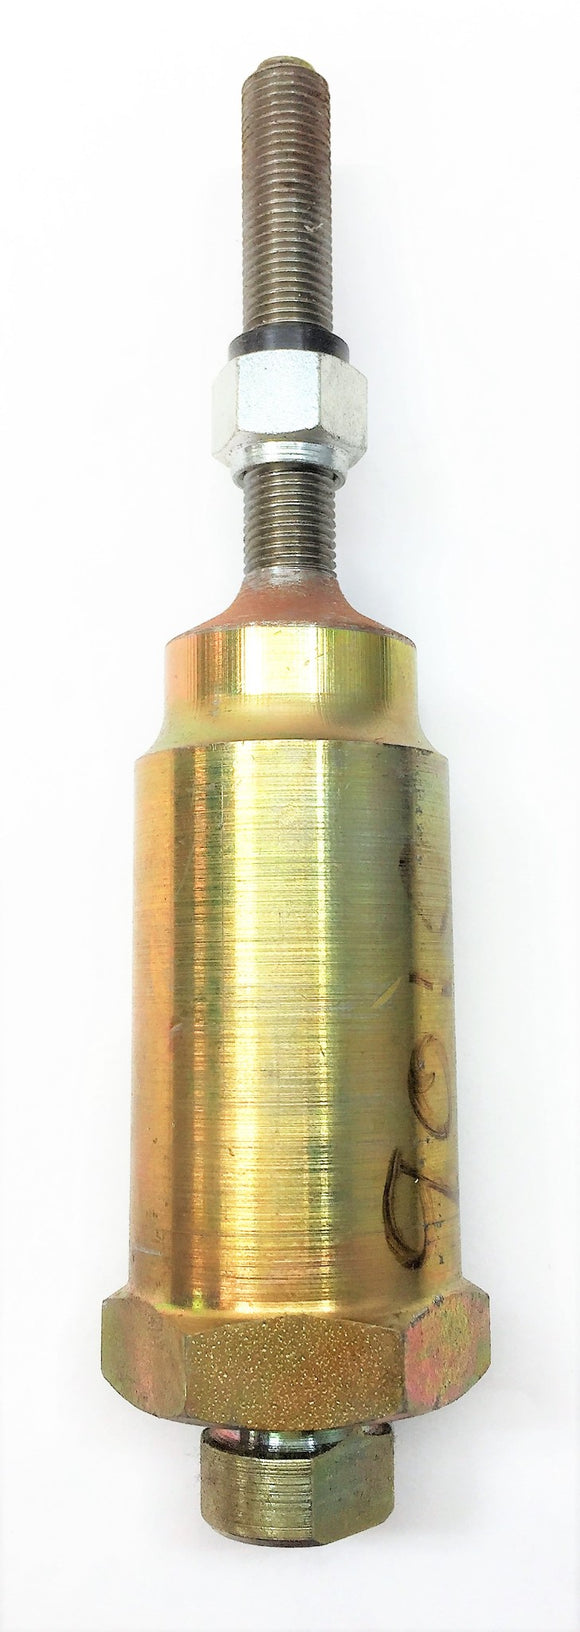 DETROIT DIESEL Cylinder Assembly 05129010 NOS